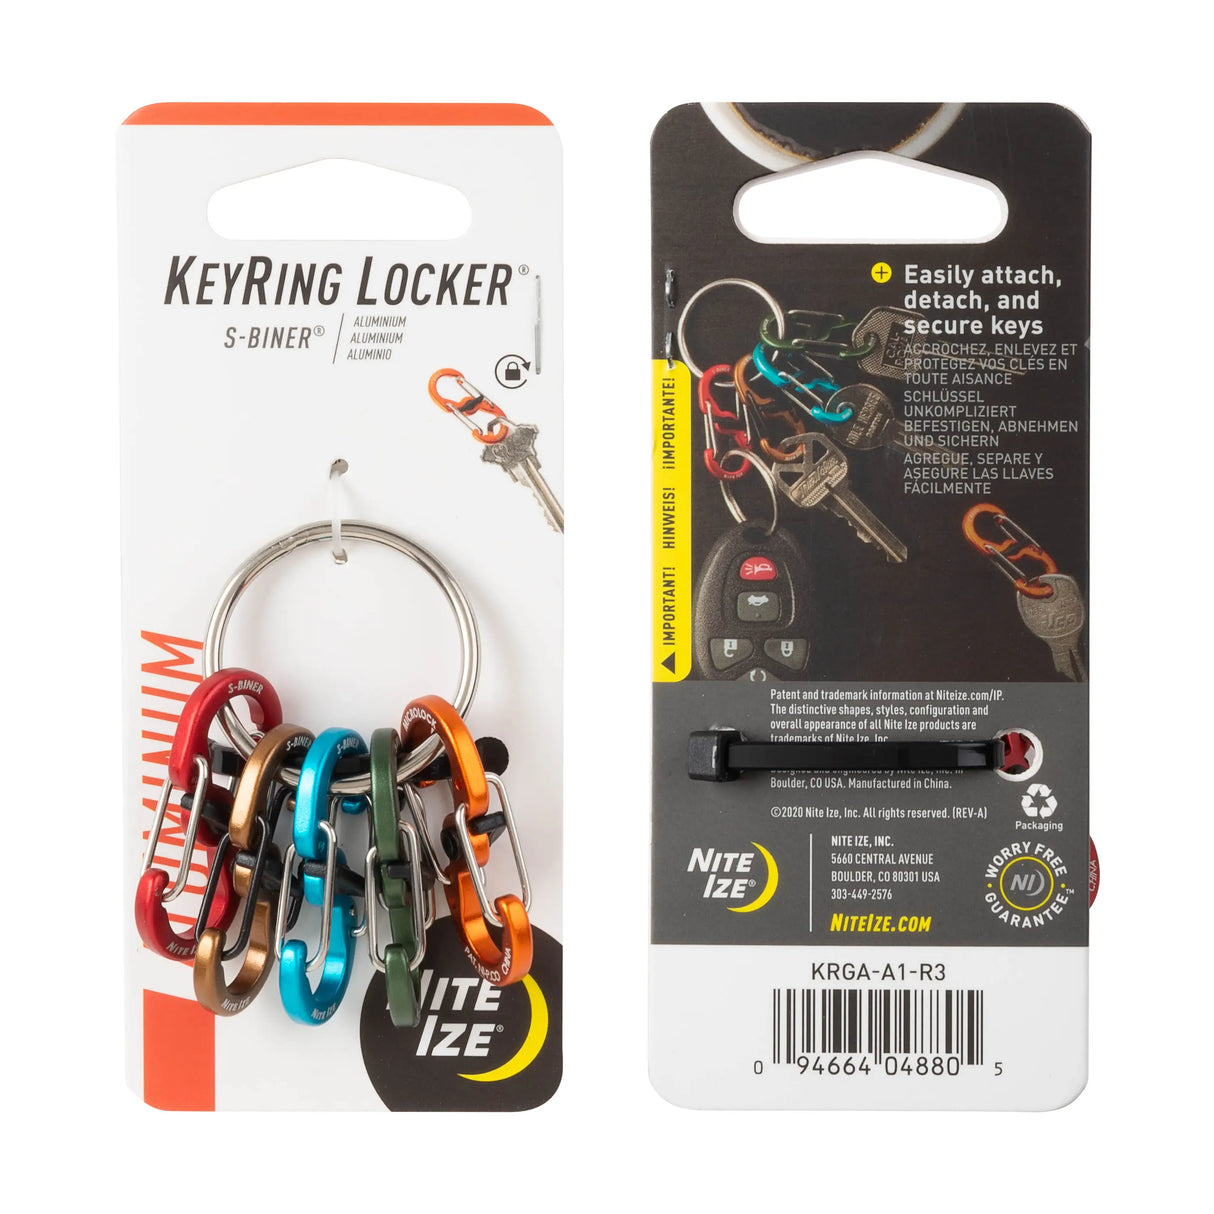 Keyring Locker S-Biner®